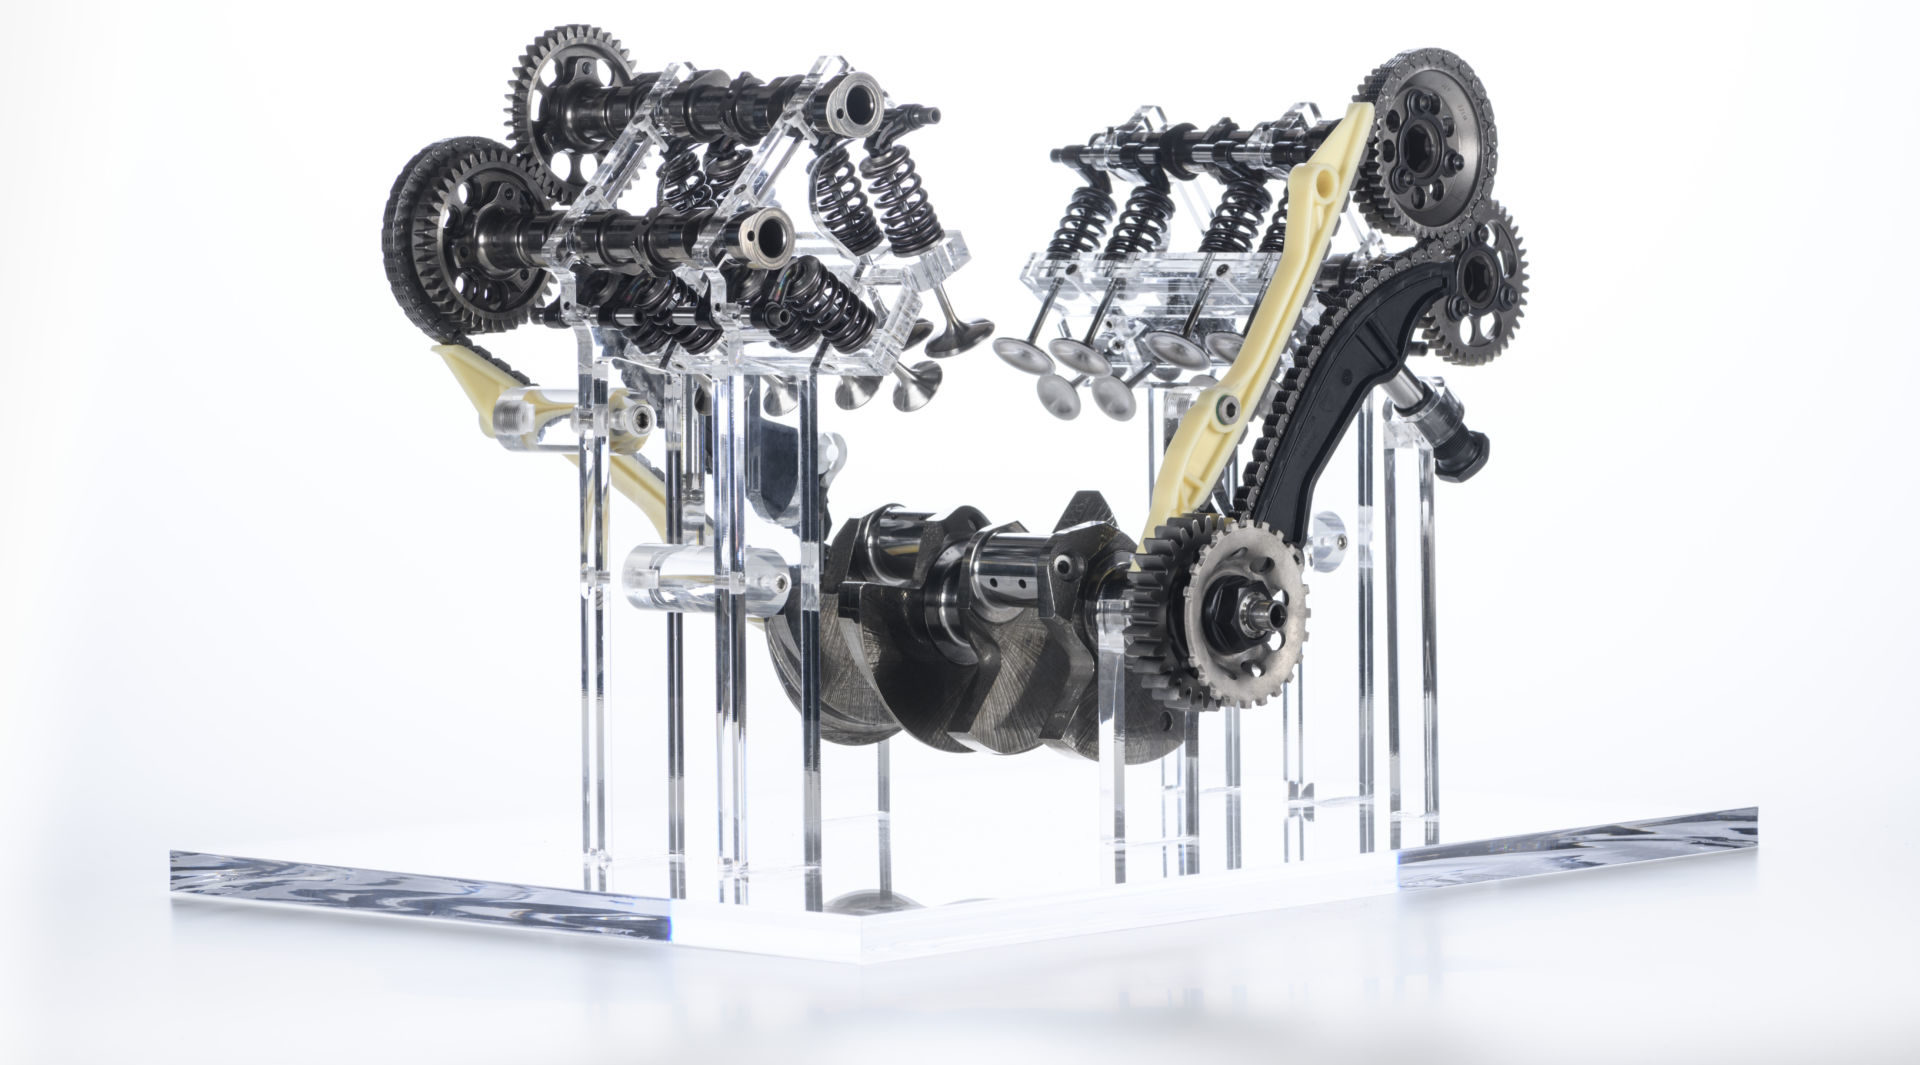 The internal components of Ducati's new V4 Granturismo engine. Photo courtesy Ducati.